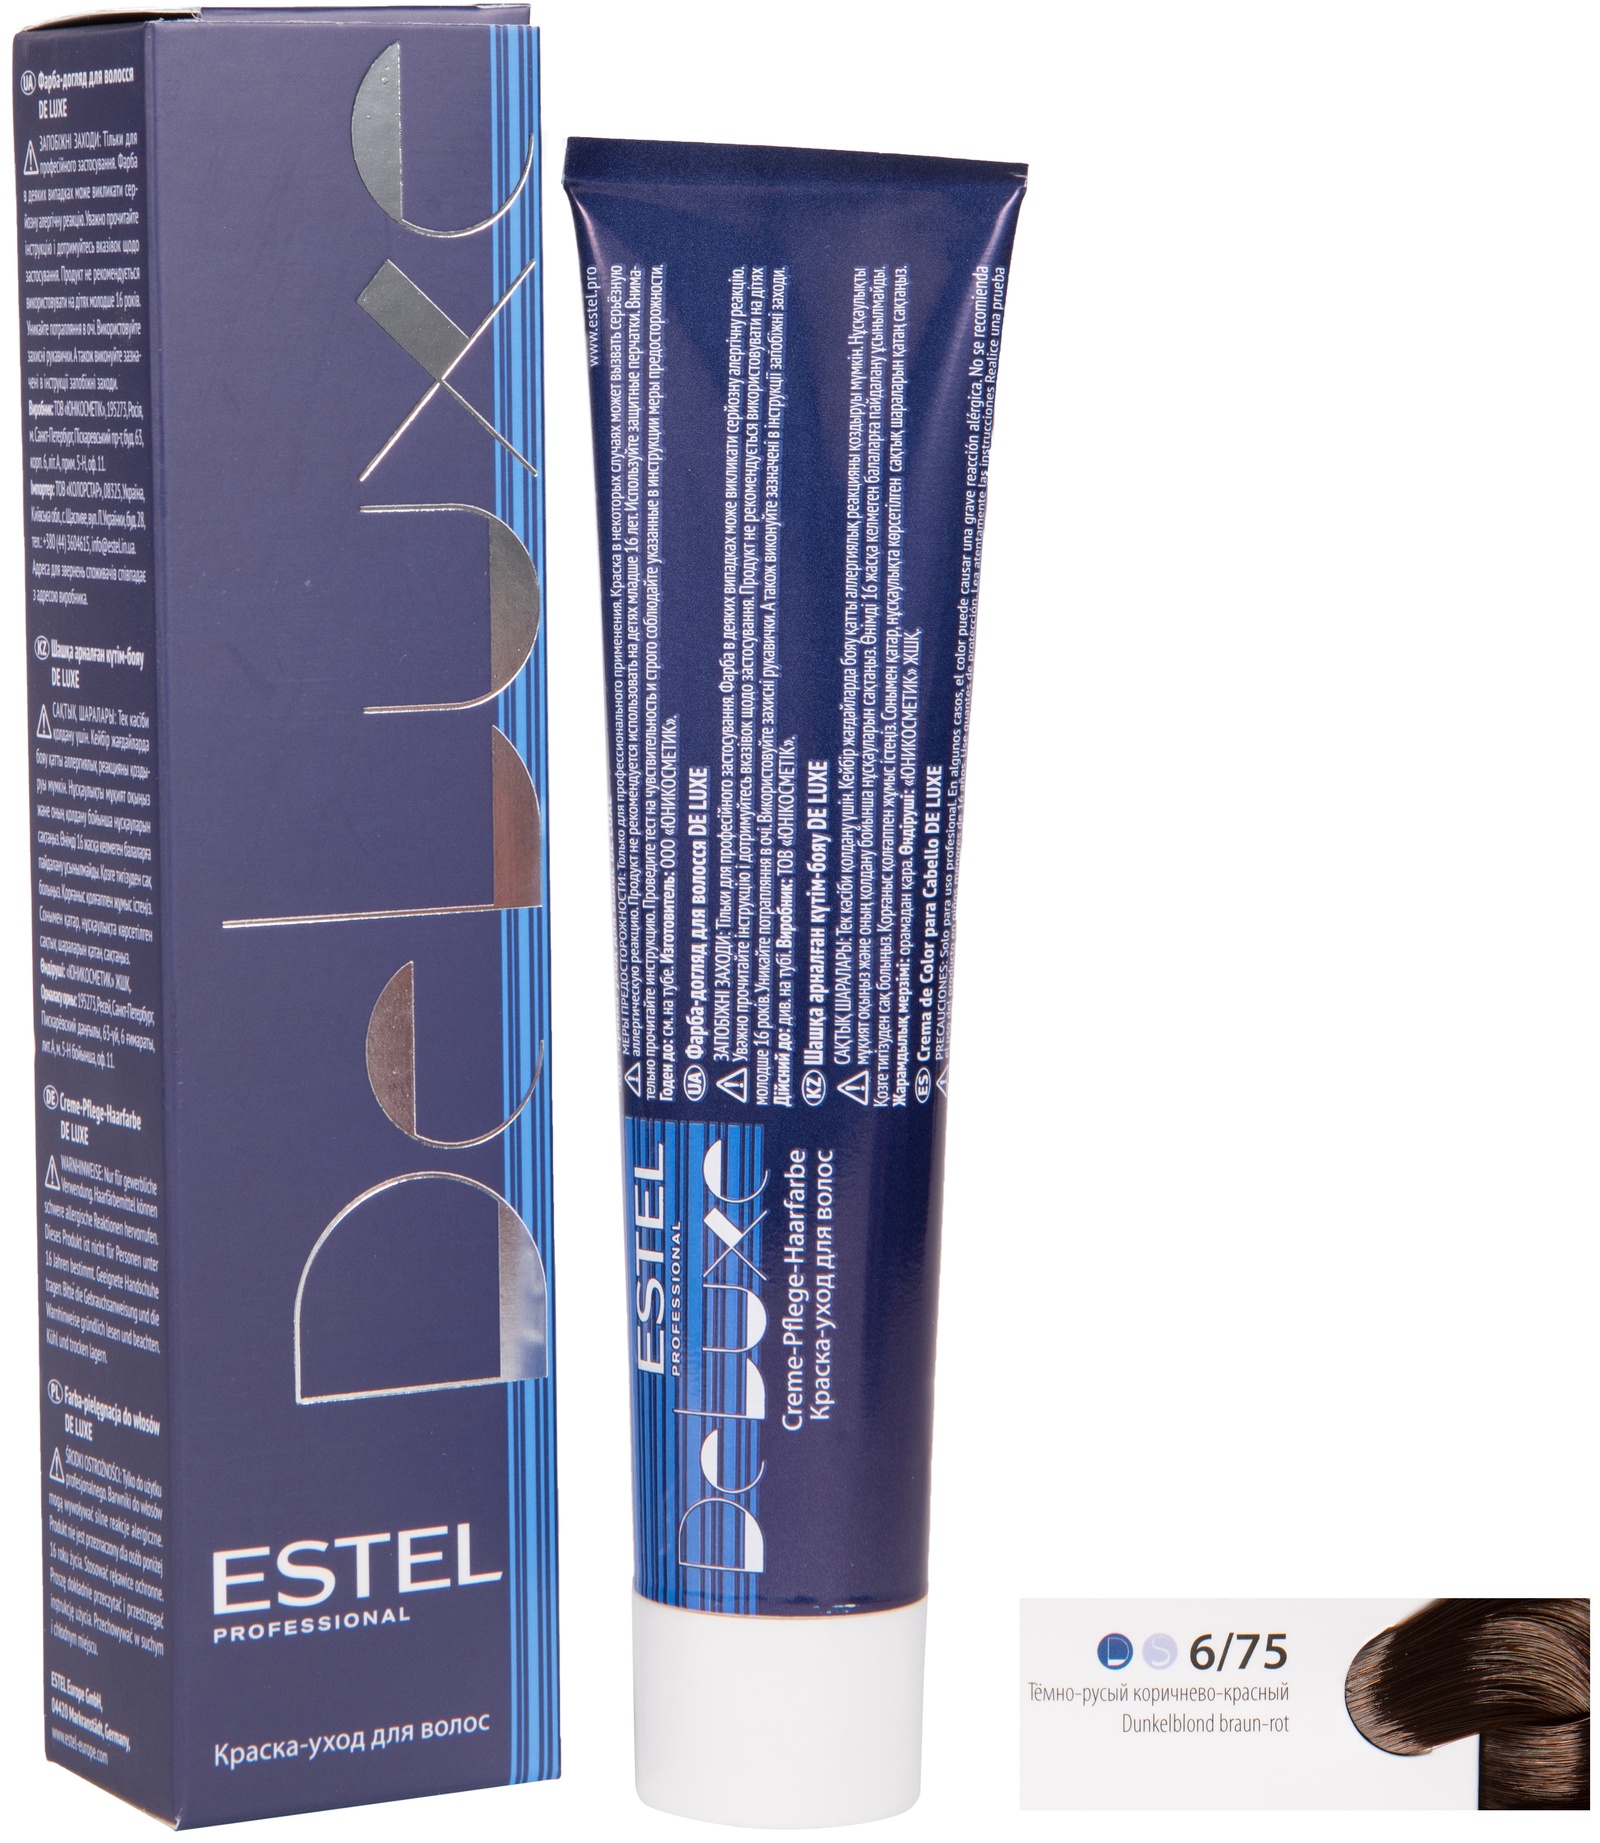 Краска для волос ESTEL PROFESSIONAL 6/75 DE LUXE краска-уход для окрашивания волос, темно-русый коричнево-красный 60 мл